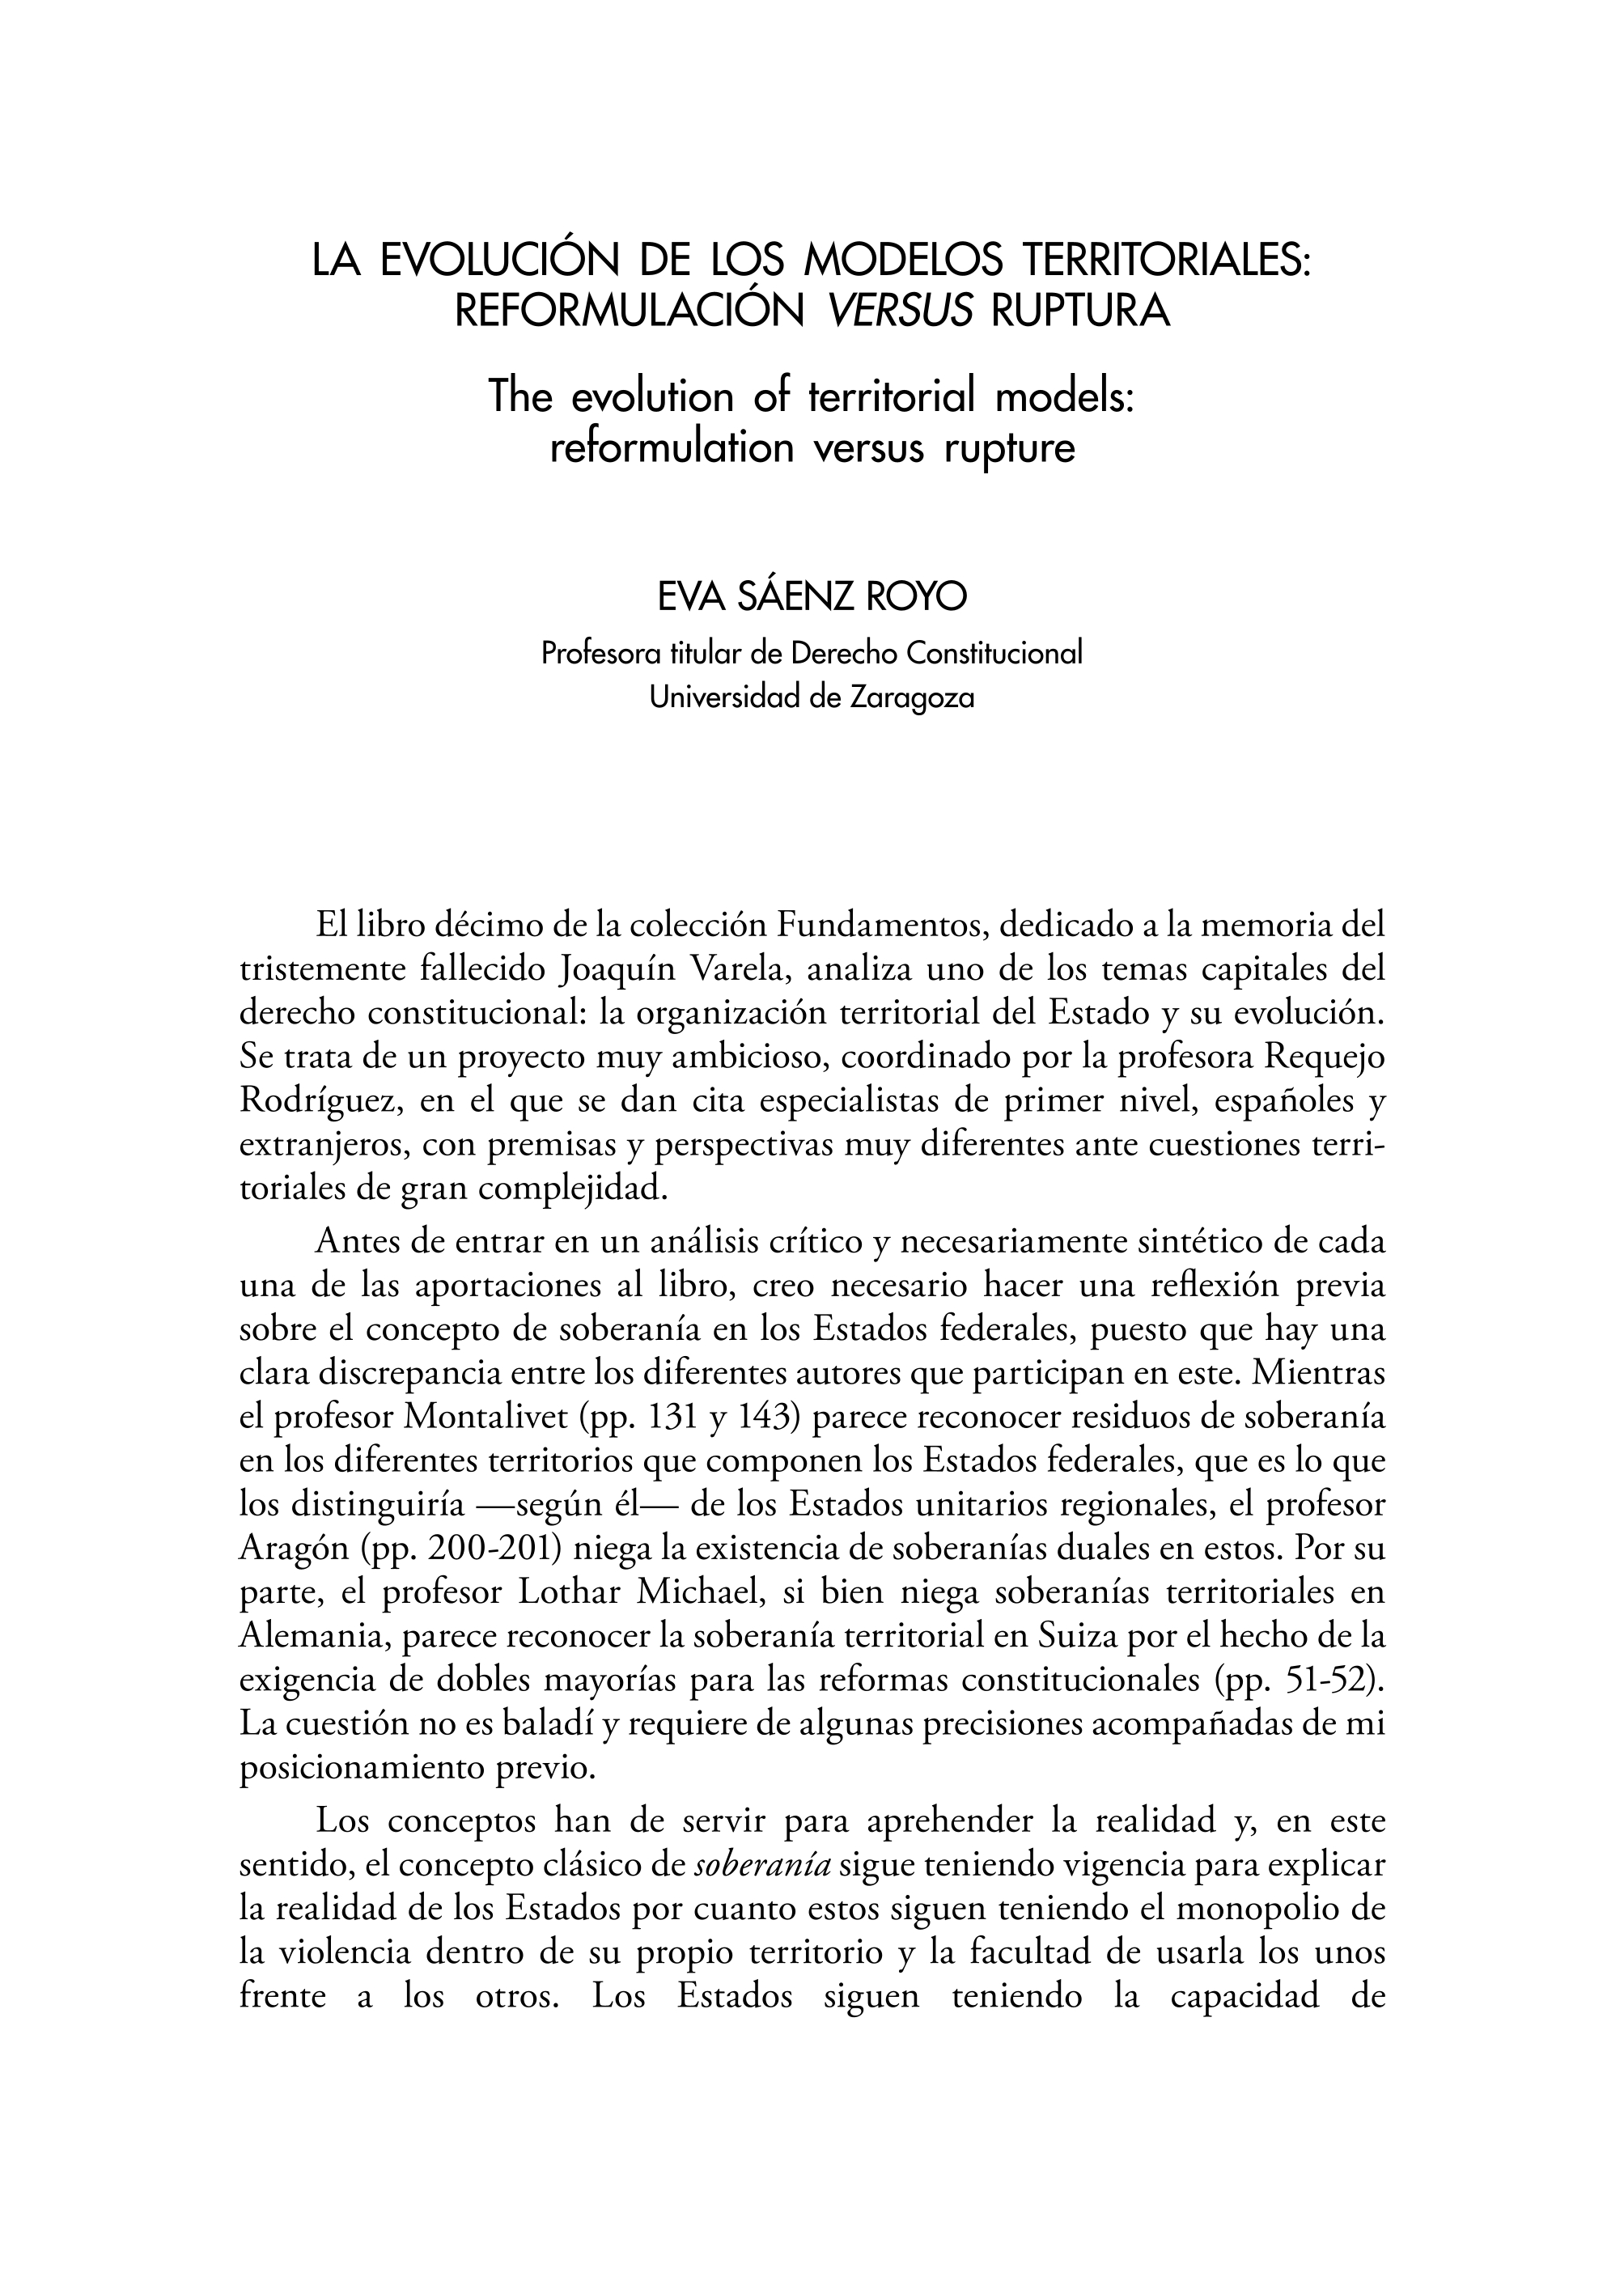 La evolución de los modelos territoriales: reformulación versus ruptura. (Fundamentos 10/2018, Junta General del Principado de Asturias), de Paloma Requejo Rodríguez (coord.)